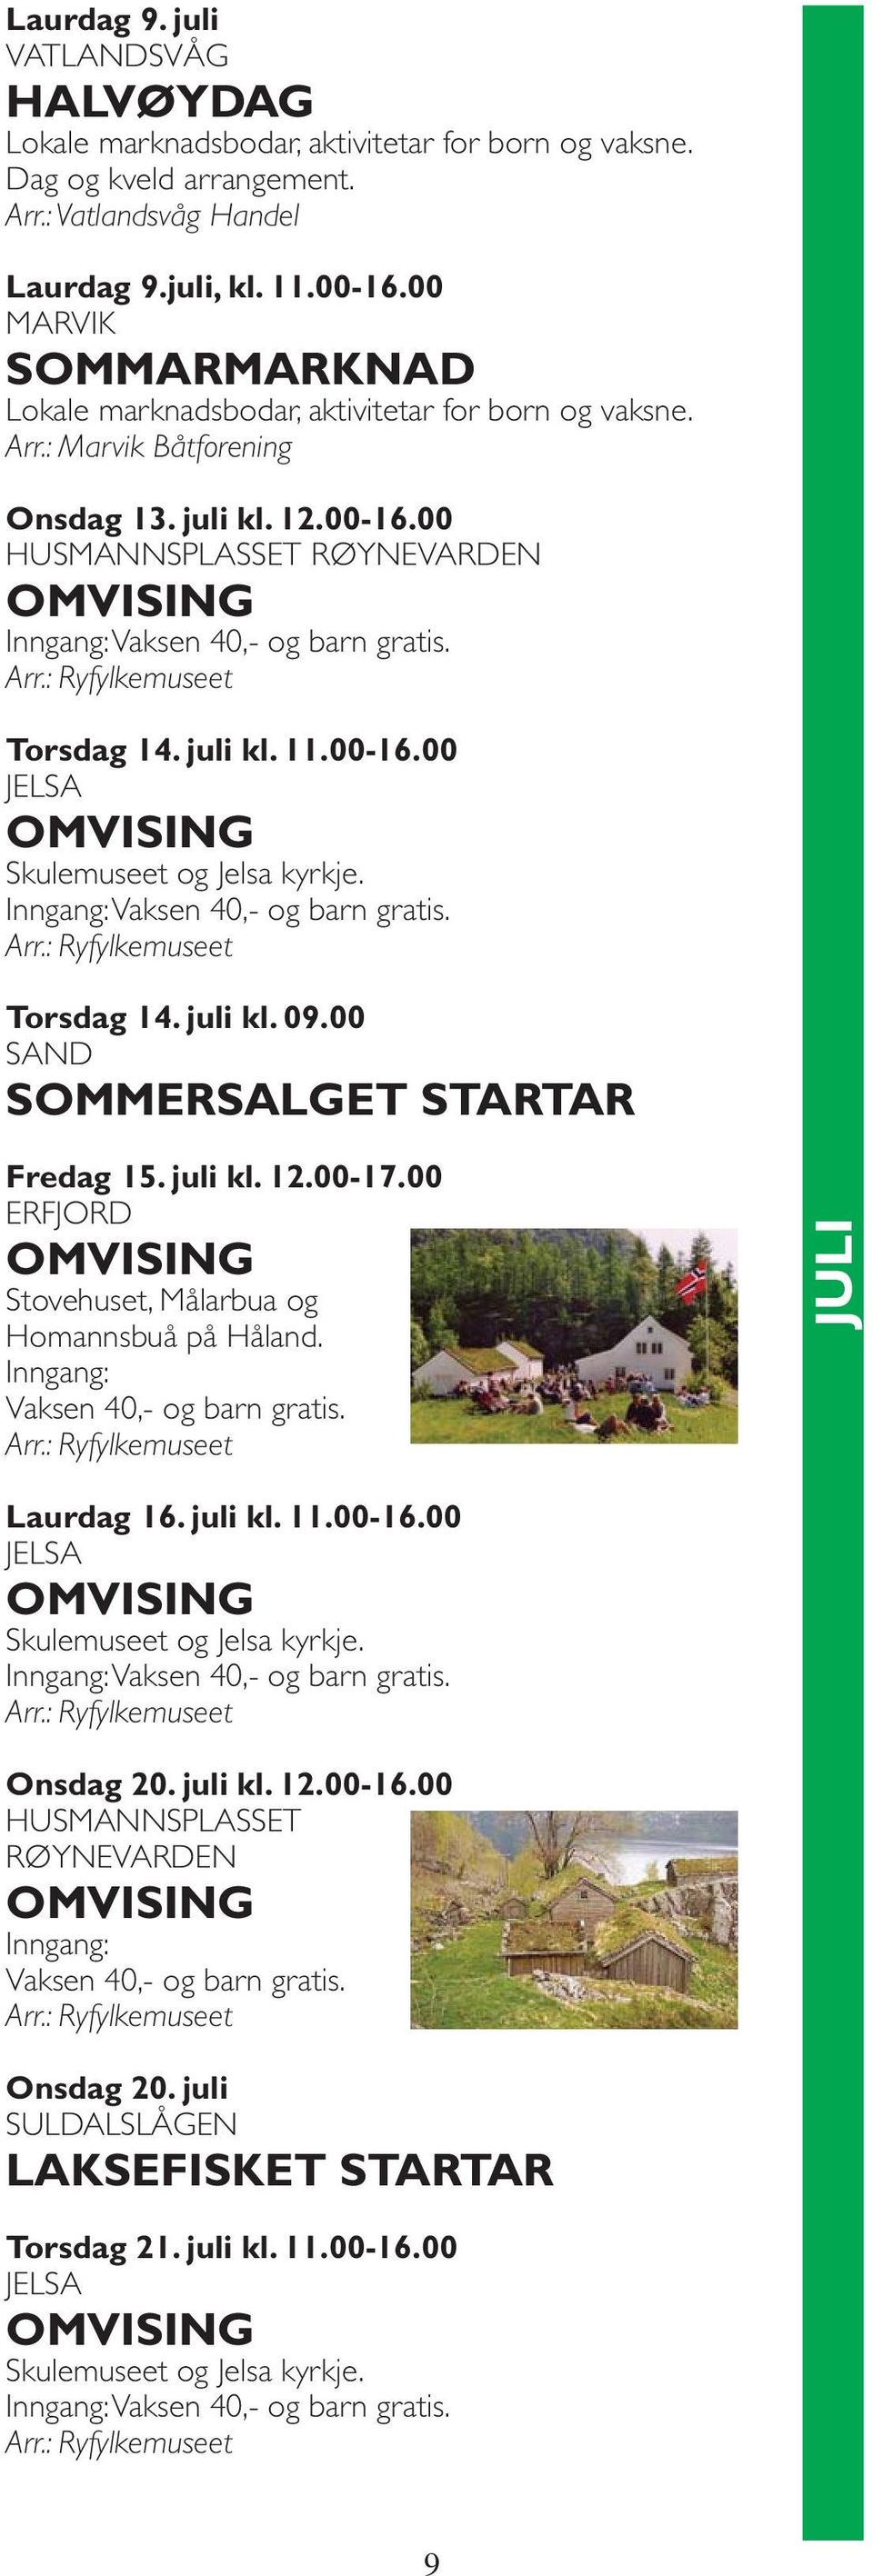 00-16.00 Torsdag 14. juli kl. 09.00 SAND SOMMERSALGET STARTAR Fredag 15. juli kl. 12.00-17.00 ERFJORD Stovehuset, Målarbua og Homannsbuå på Håland. Inngang: Vaksen 40,- og barn gratis.